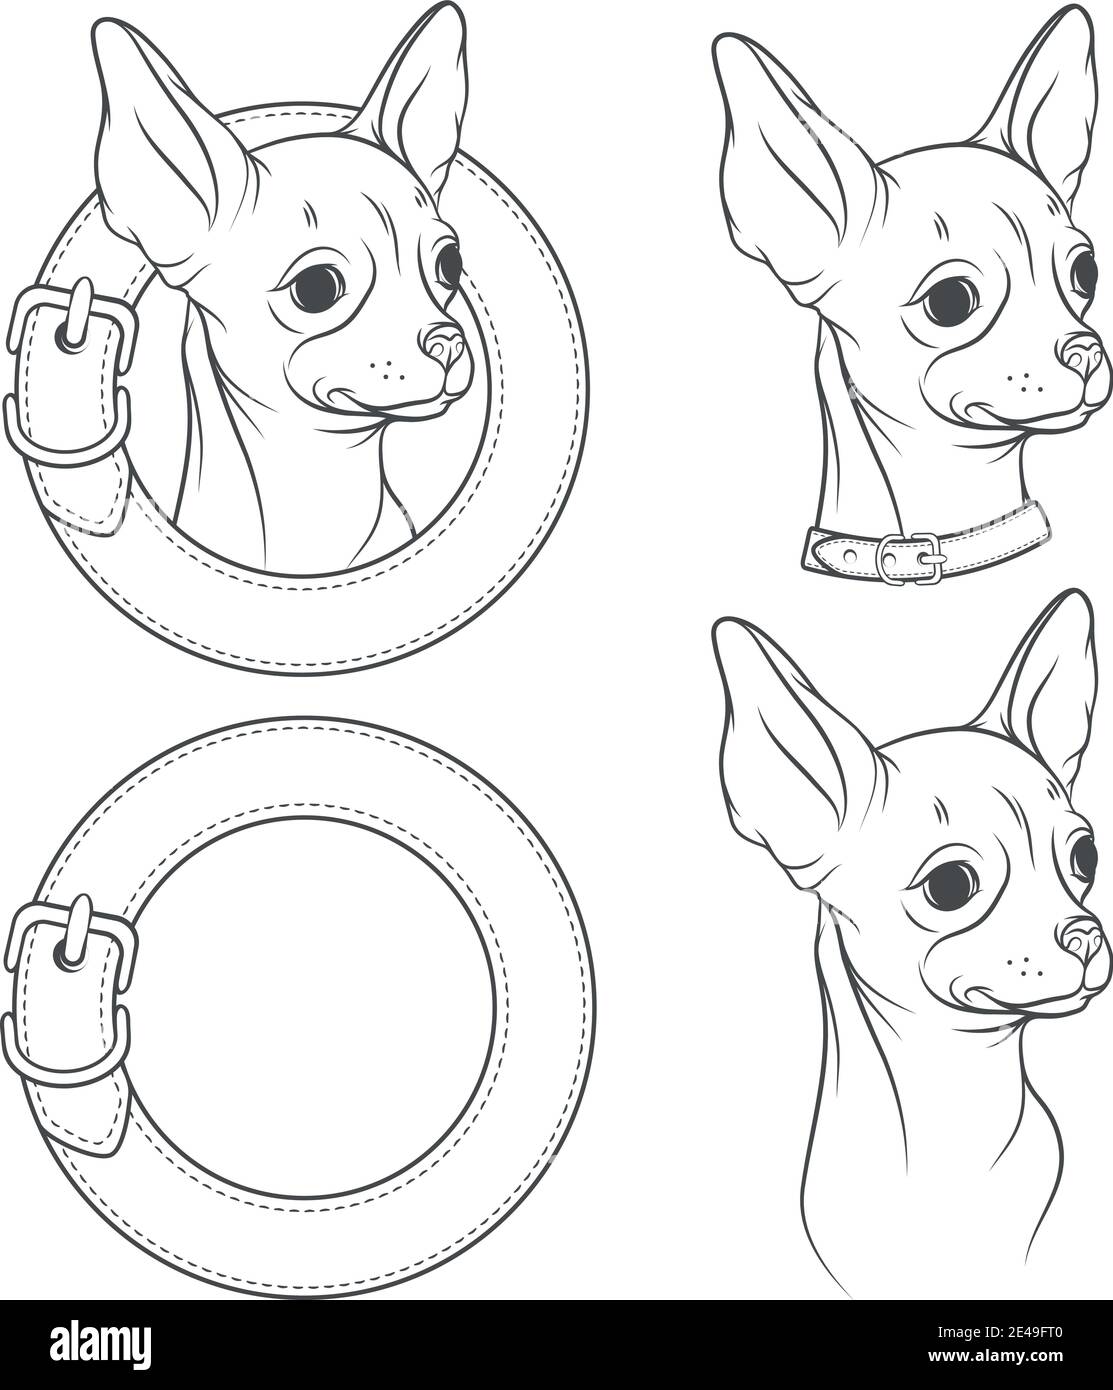 Insieme di disegno vettoriale del chihuahua nel collare. Oggetti isolati su sfondo bianco. Illustrazione Vettoriale